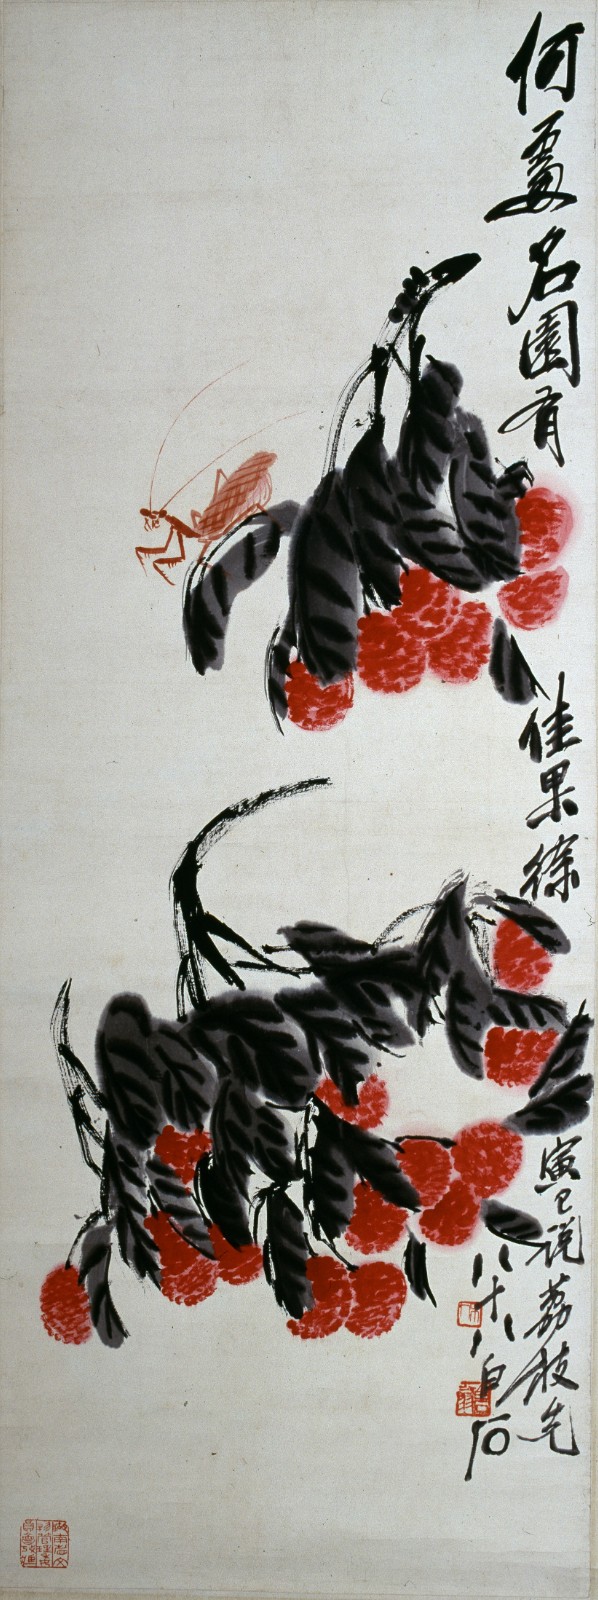 3-1-1 荔枝螳螂图轴 1948.jpg